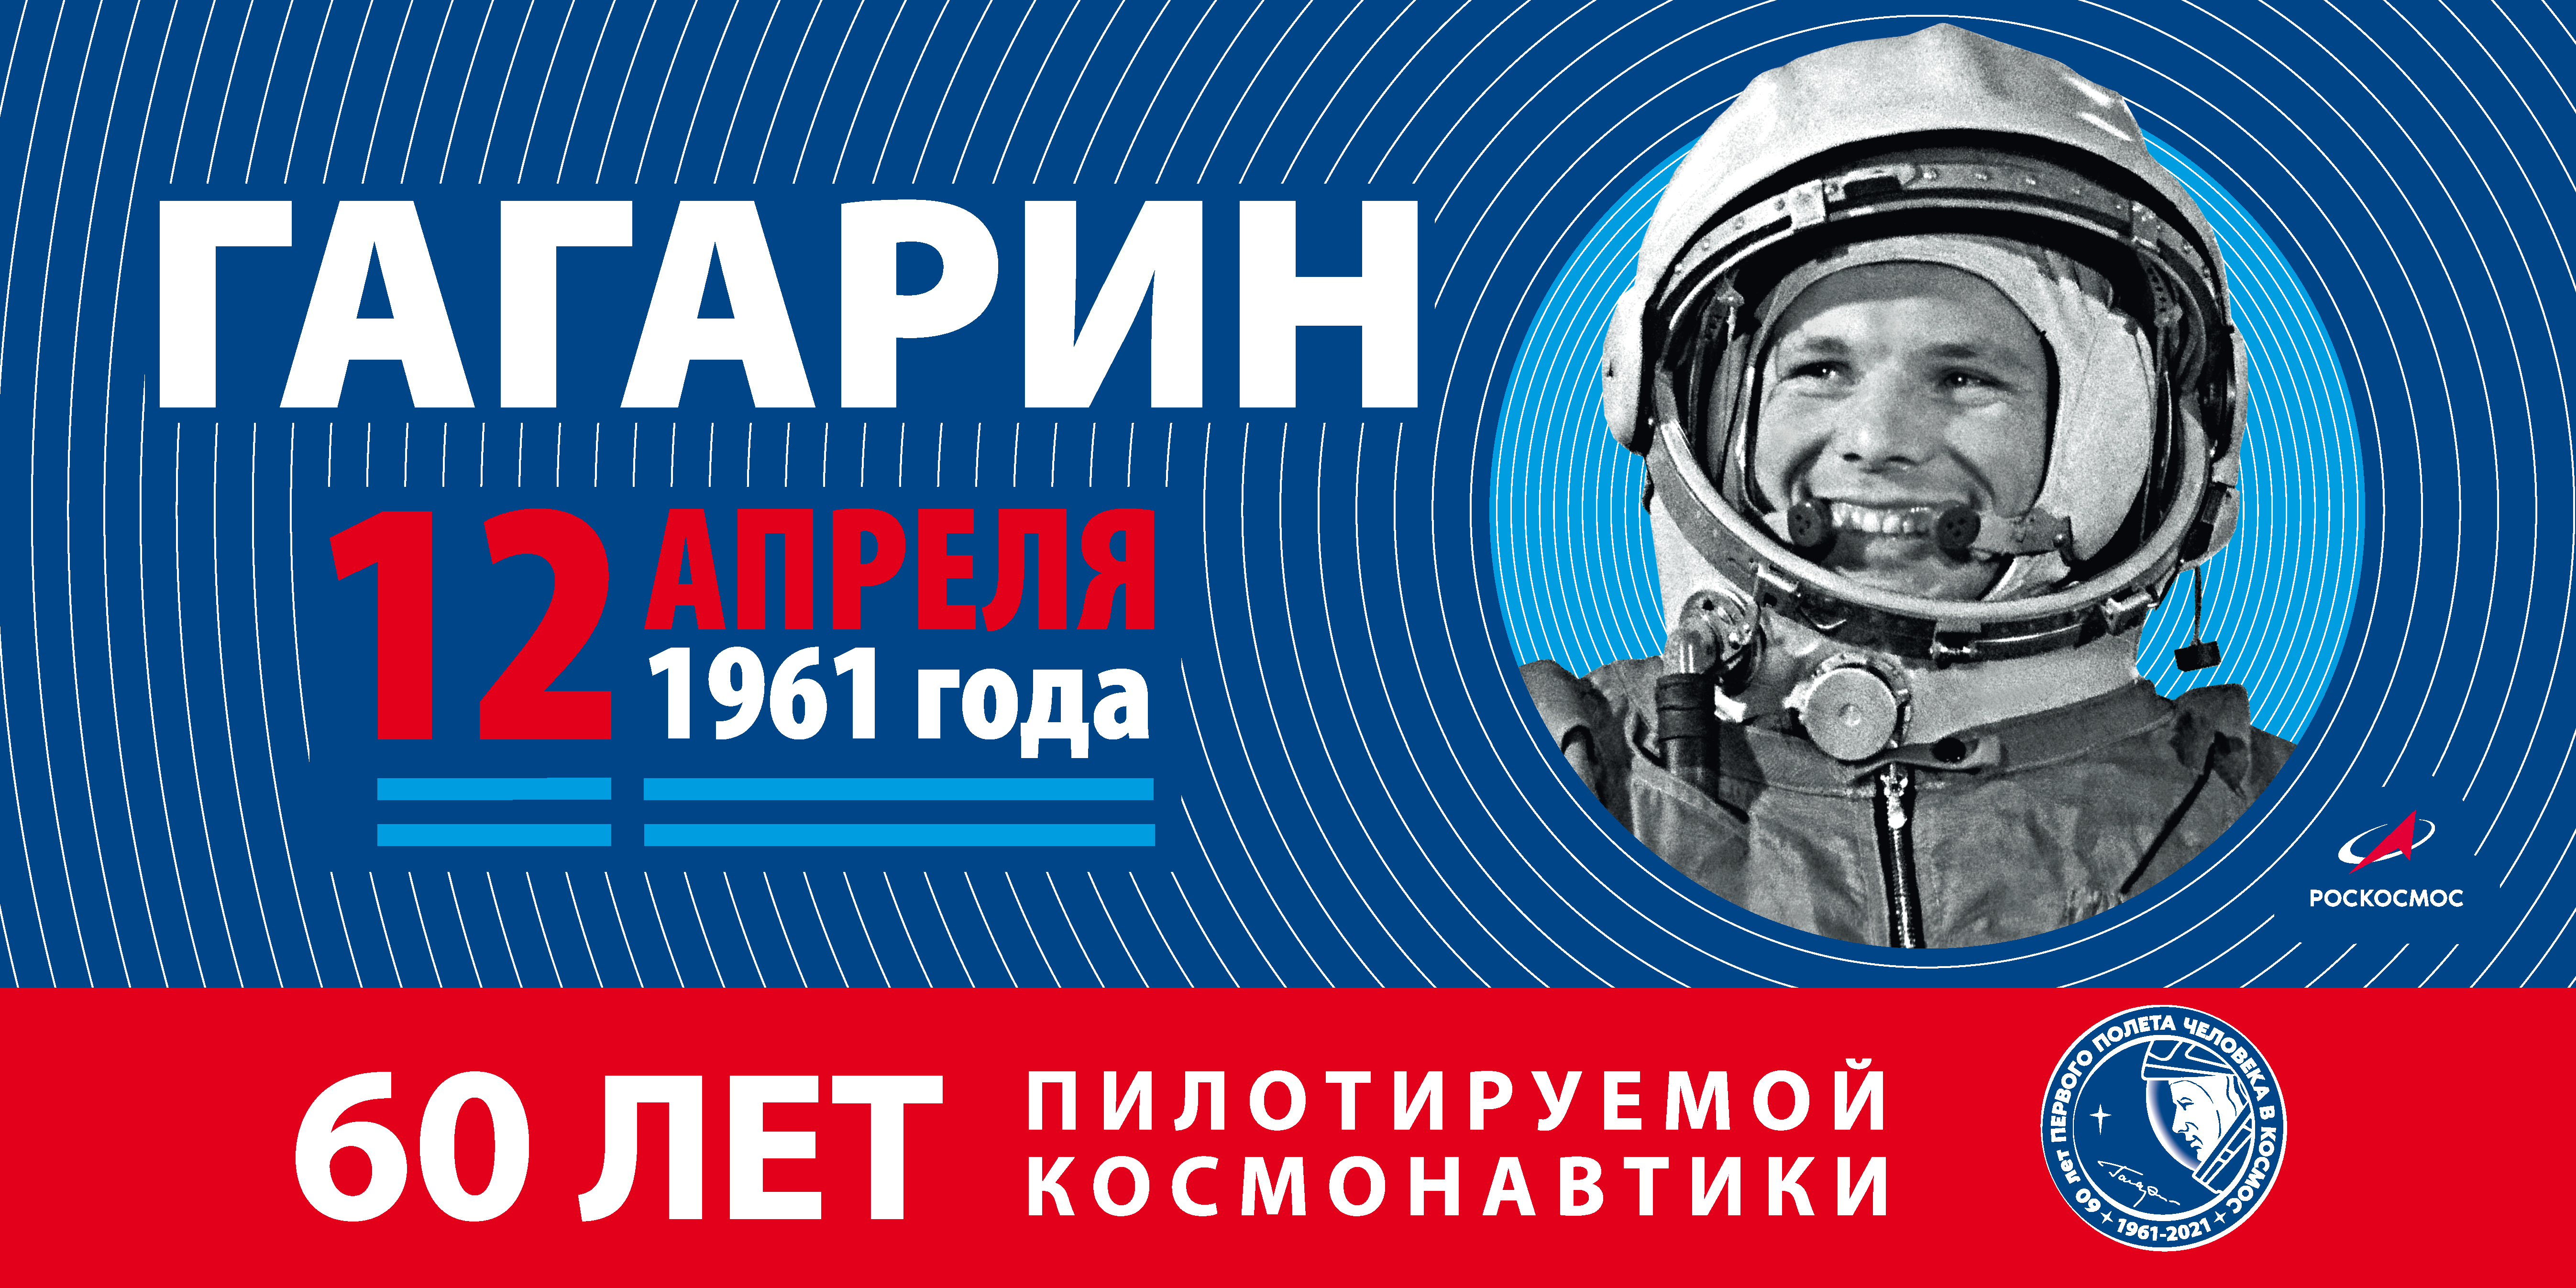 Стань частью онлайн-акции «Мечты о космосе» в честь Дня Космонавтики